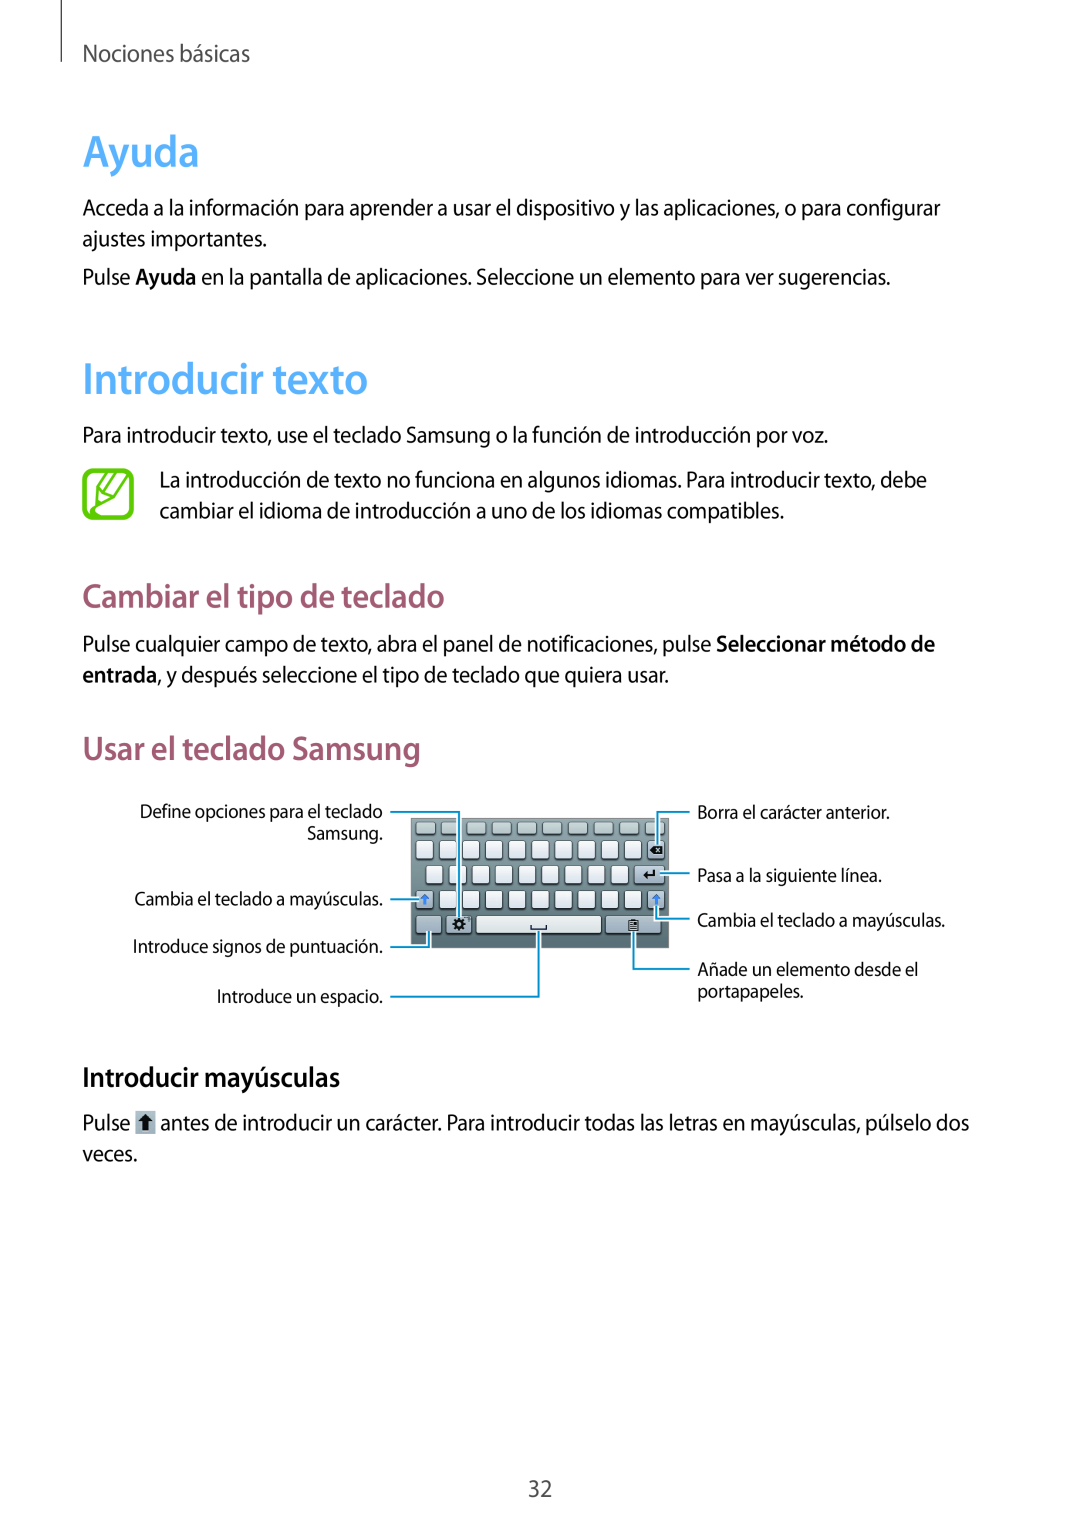 Samsung SM-T2100ZWATPH Ayuda, Introducir texto, Cambiar el tipo de teclado, Usar el teclado Samsung, Introducir mayúsculas 